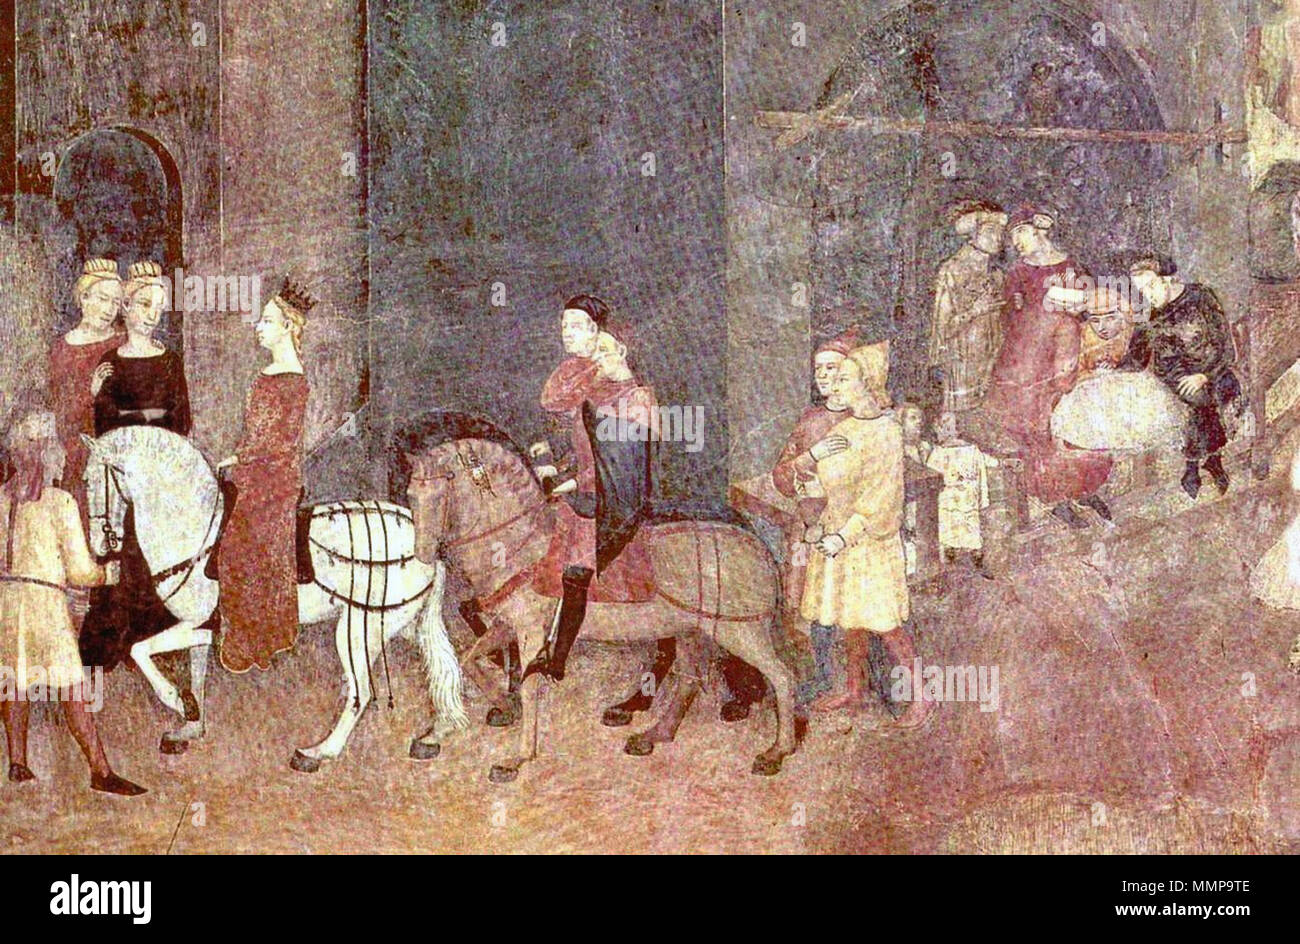 Ambrogio Lorenzetti La Alegoria Del Buen Gobierno El Palazzo Publico Siena Detalle Parte Inferior Izquierda En El Ano 1340 Ambrogio Lorenzetti 1290 1348 Nombres Alternativos Nombre De Nacimiento Ambrogio Laurati Descripcion